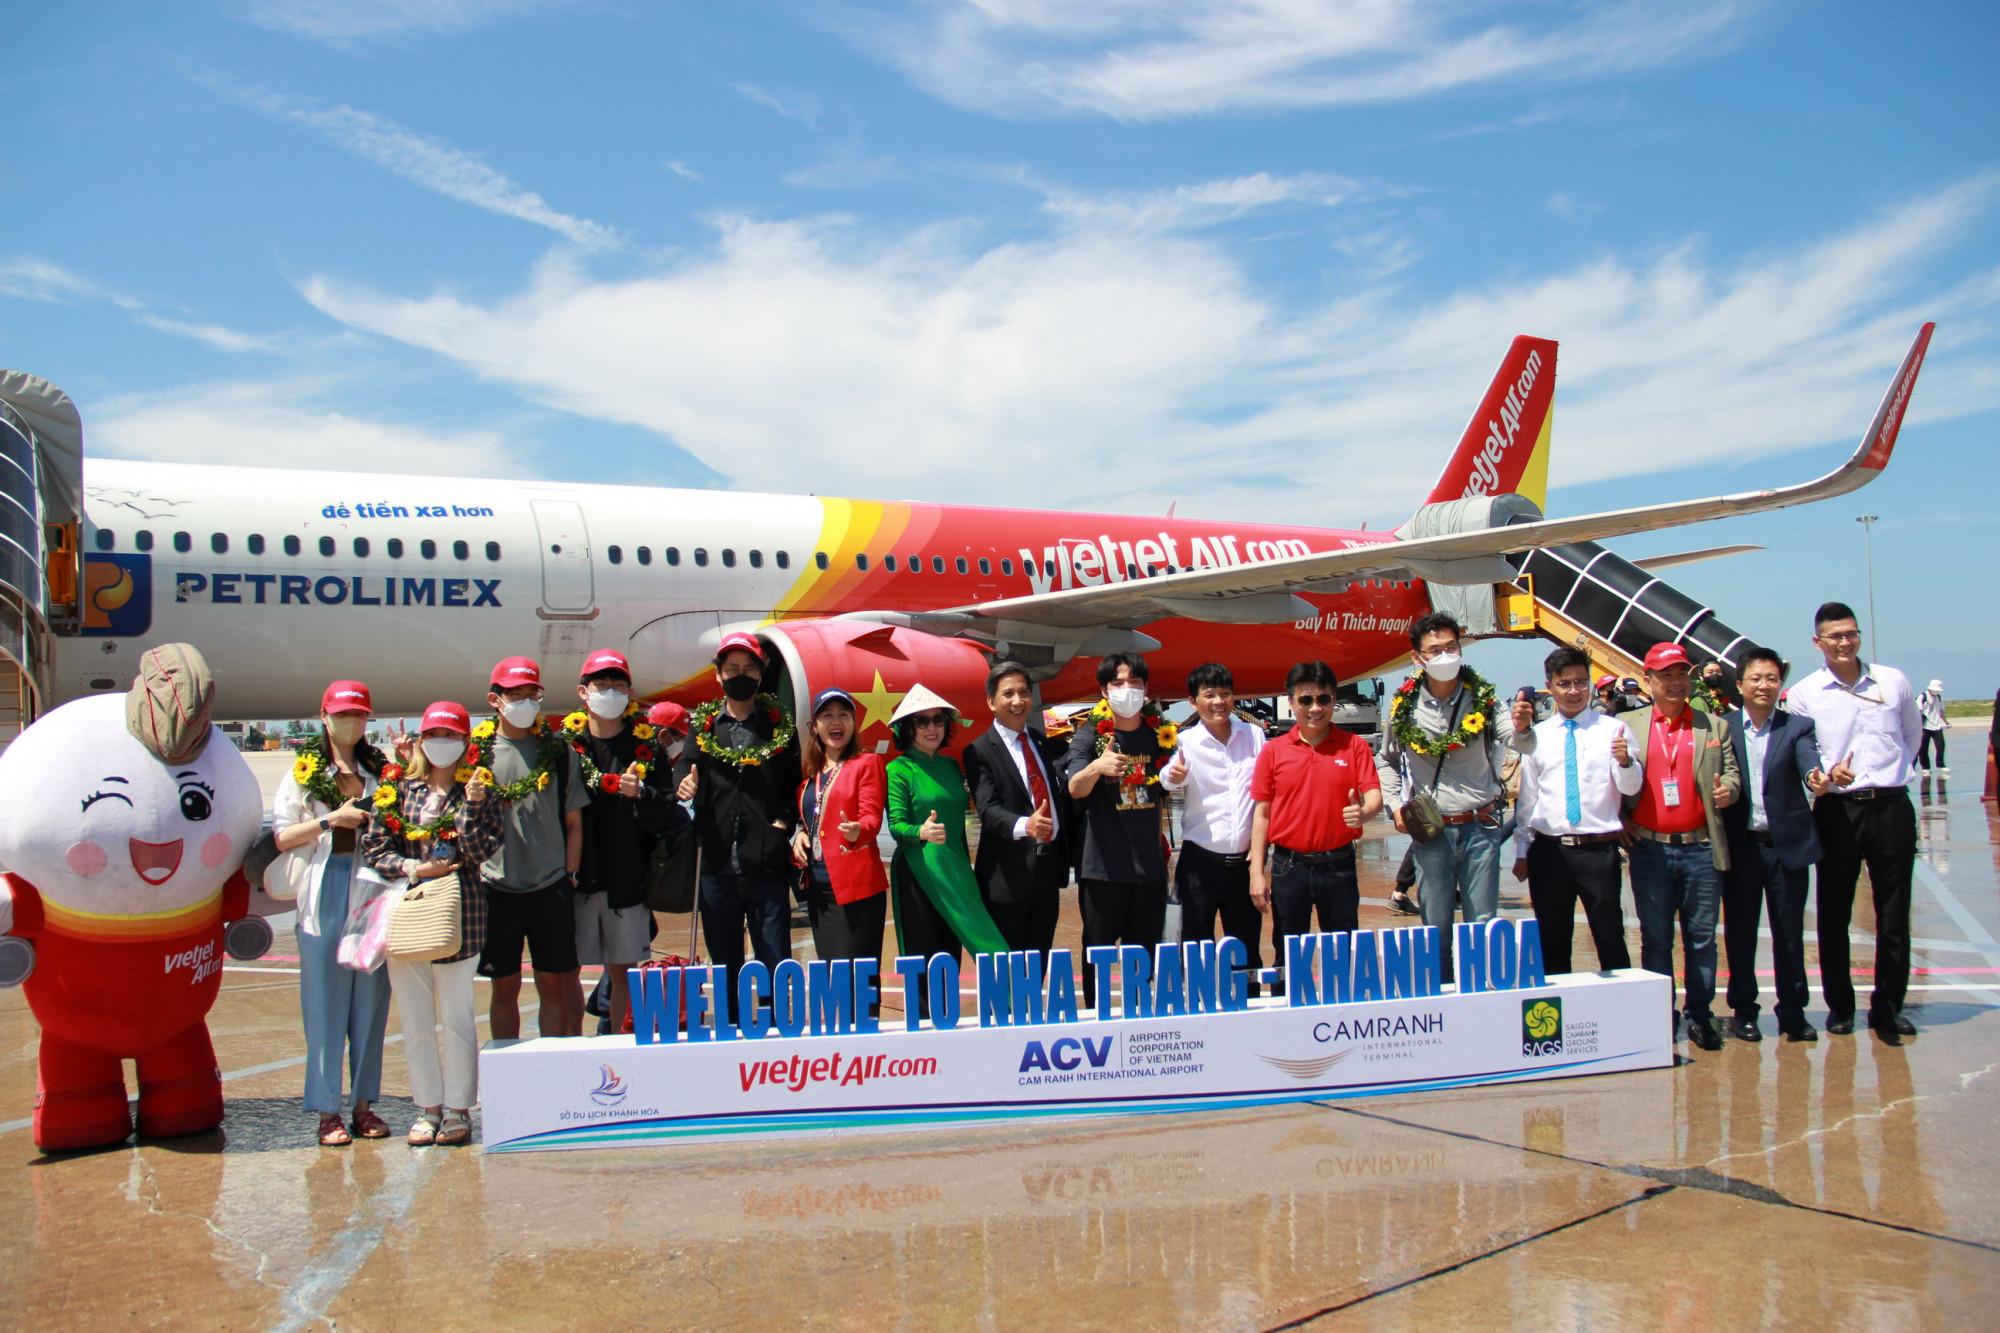 Đây là chuyến bay đầu tiên đưa khách Hàn Quốc đến Khánh Hòa từ sau khi mở cửa du lịch hoàn toàn.